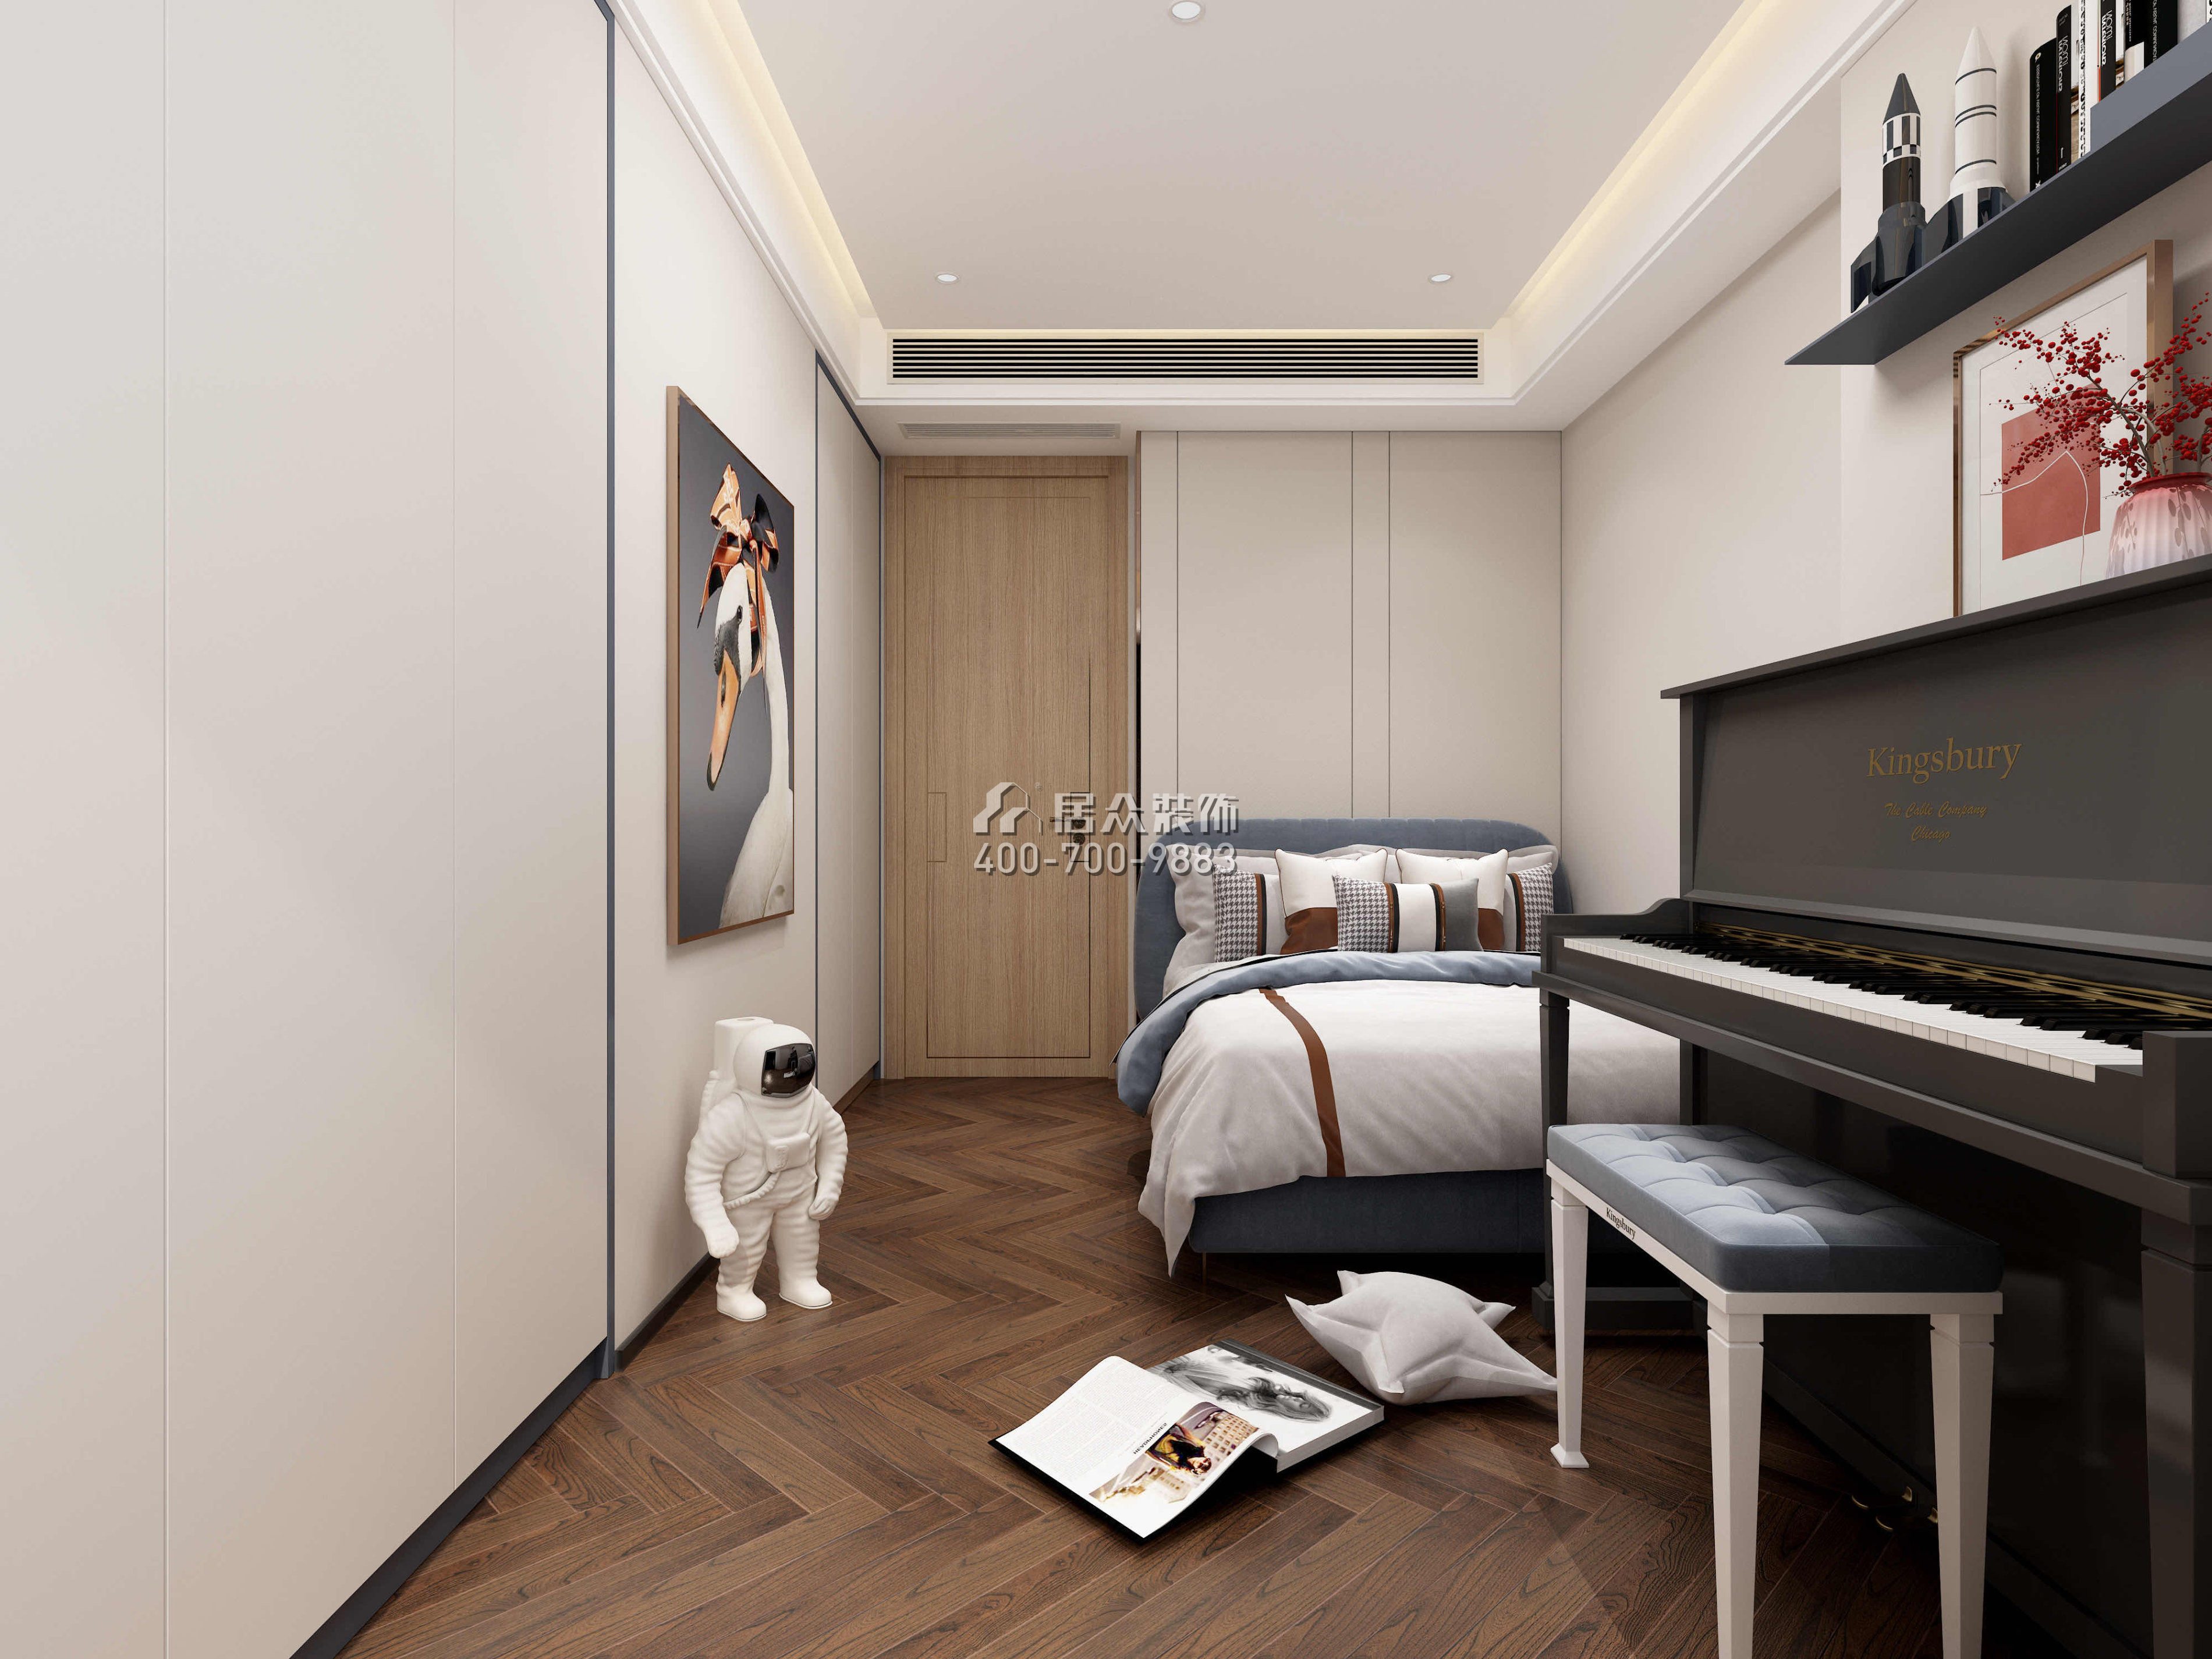 中旅国际公馆180平方米中式风格平层户型卧室装修效果图